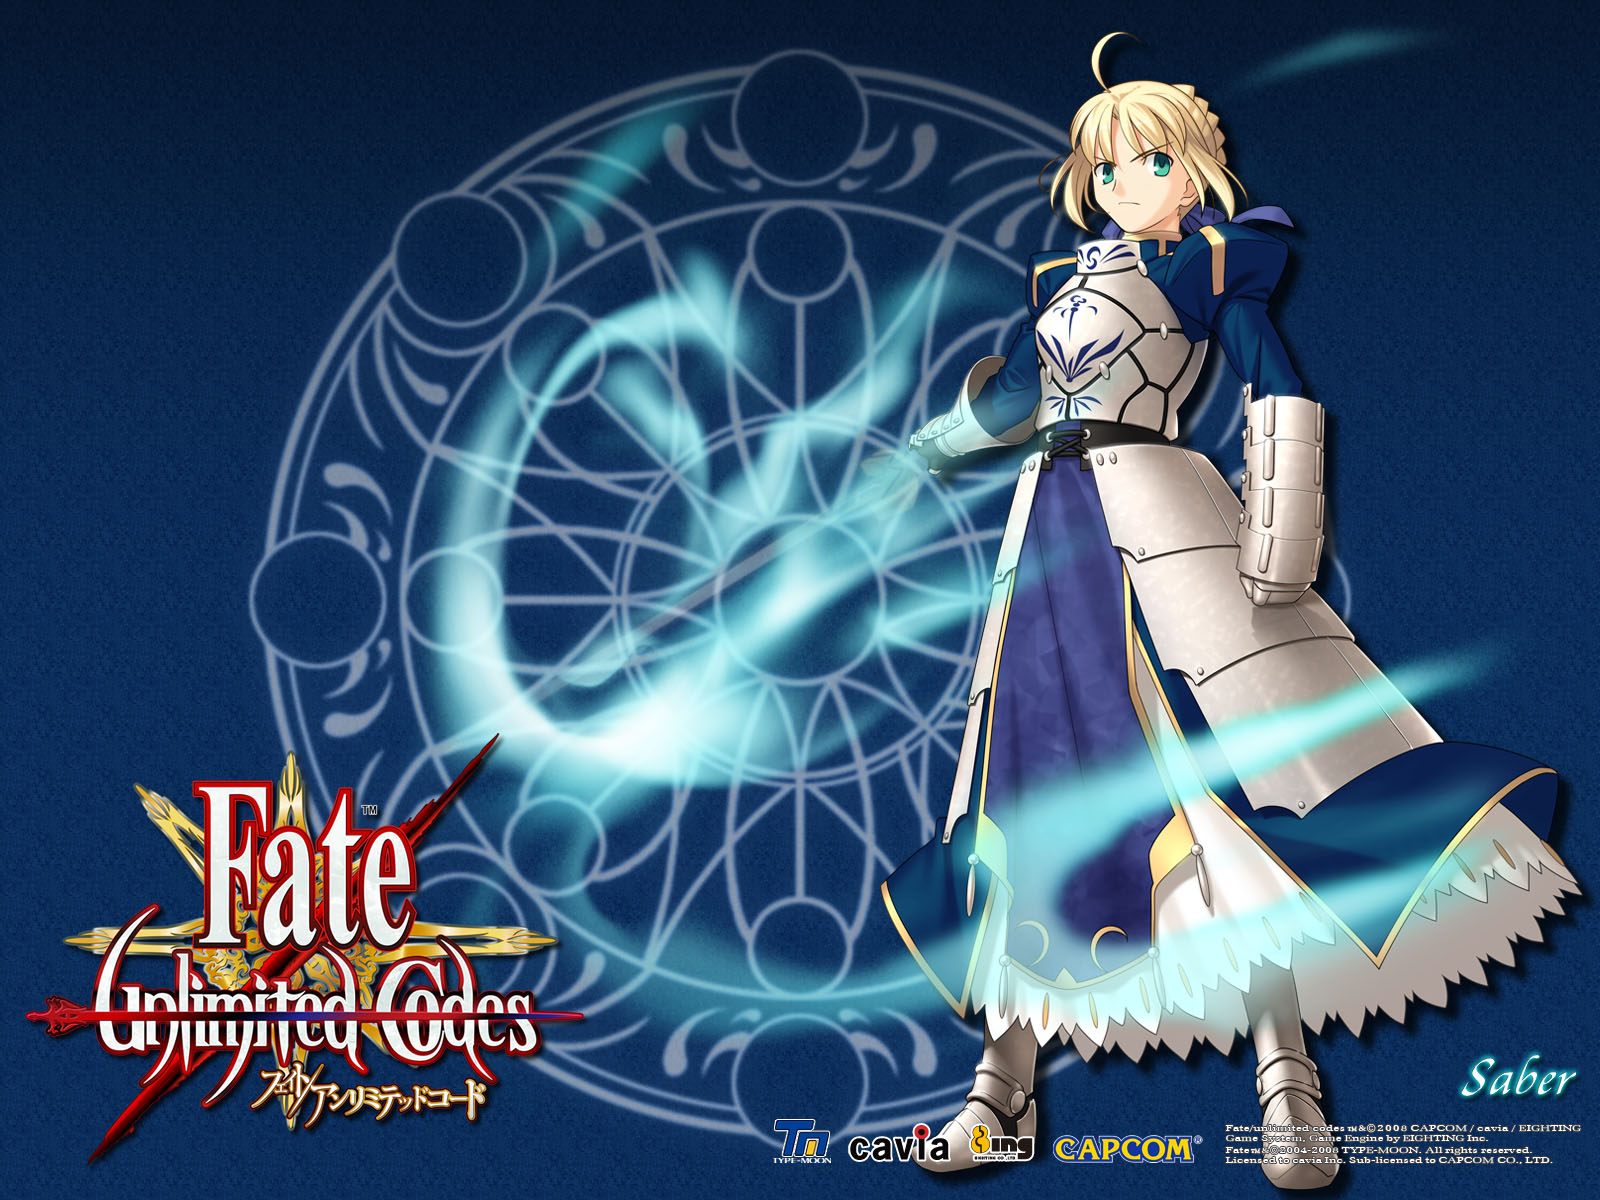 壁紙 Fate Unlimited Codes ゲーム ダウンロード 写真